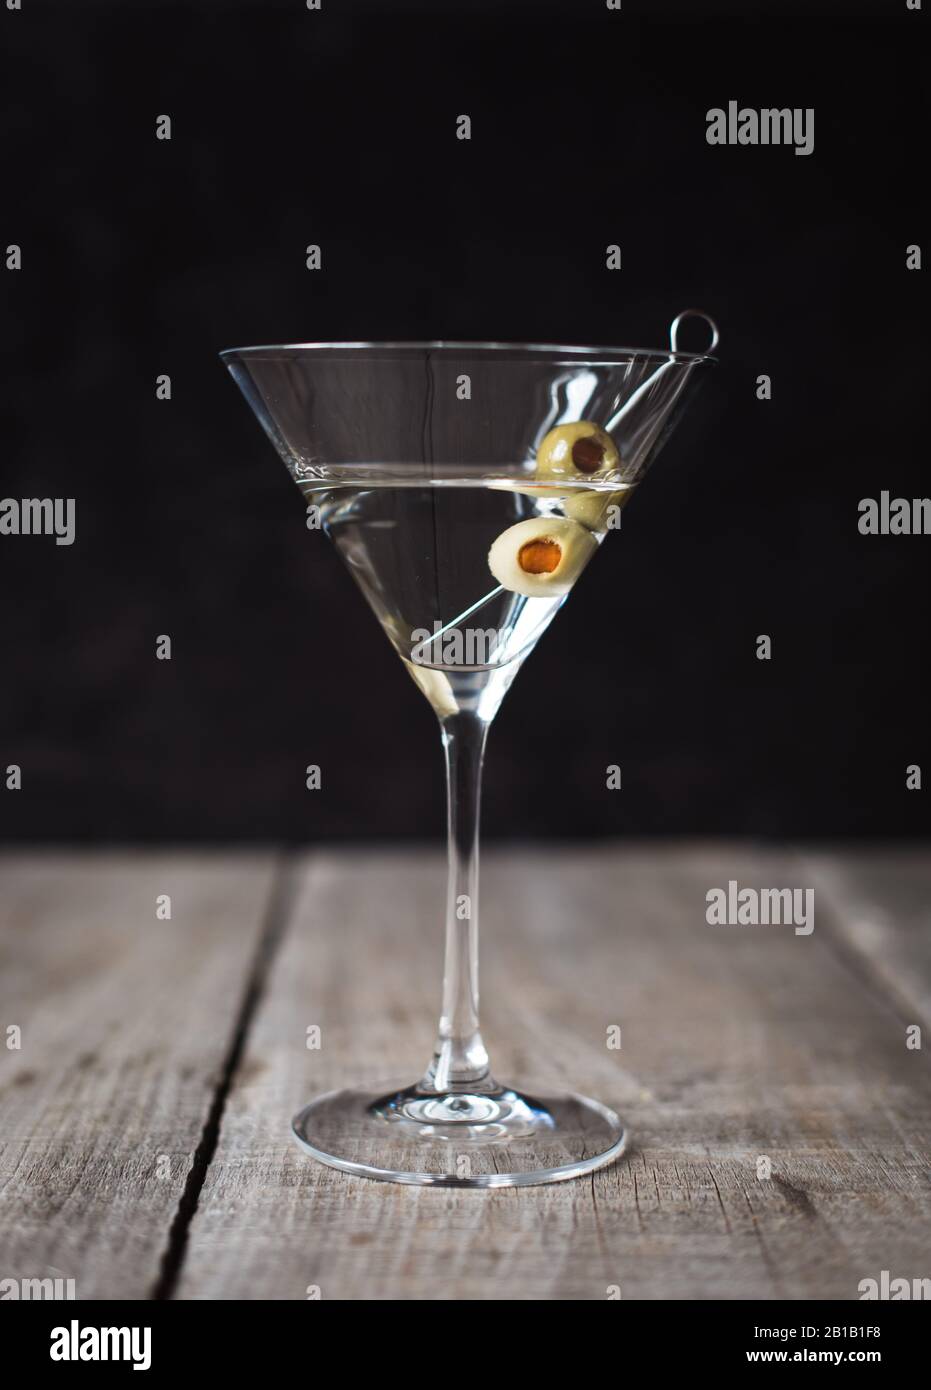 Gros plan d'un cocktail martini sur une table en bois avec fond noir. Banque D'Images